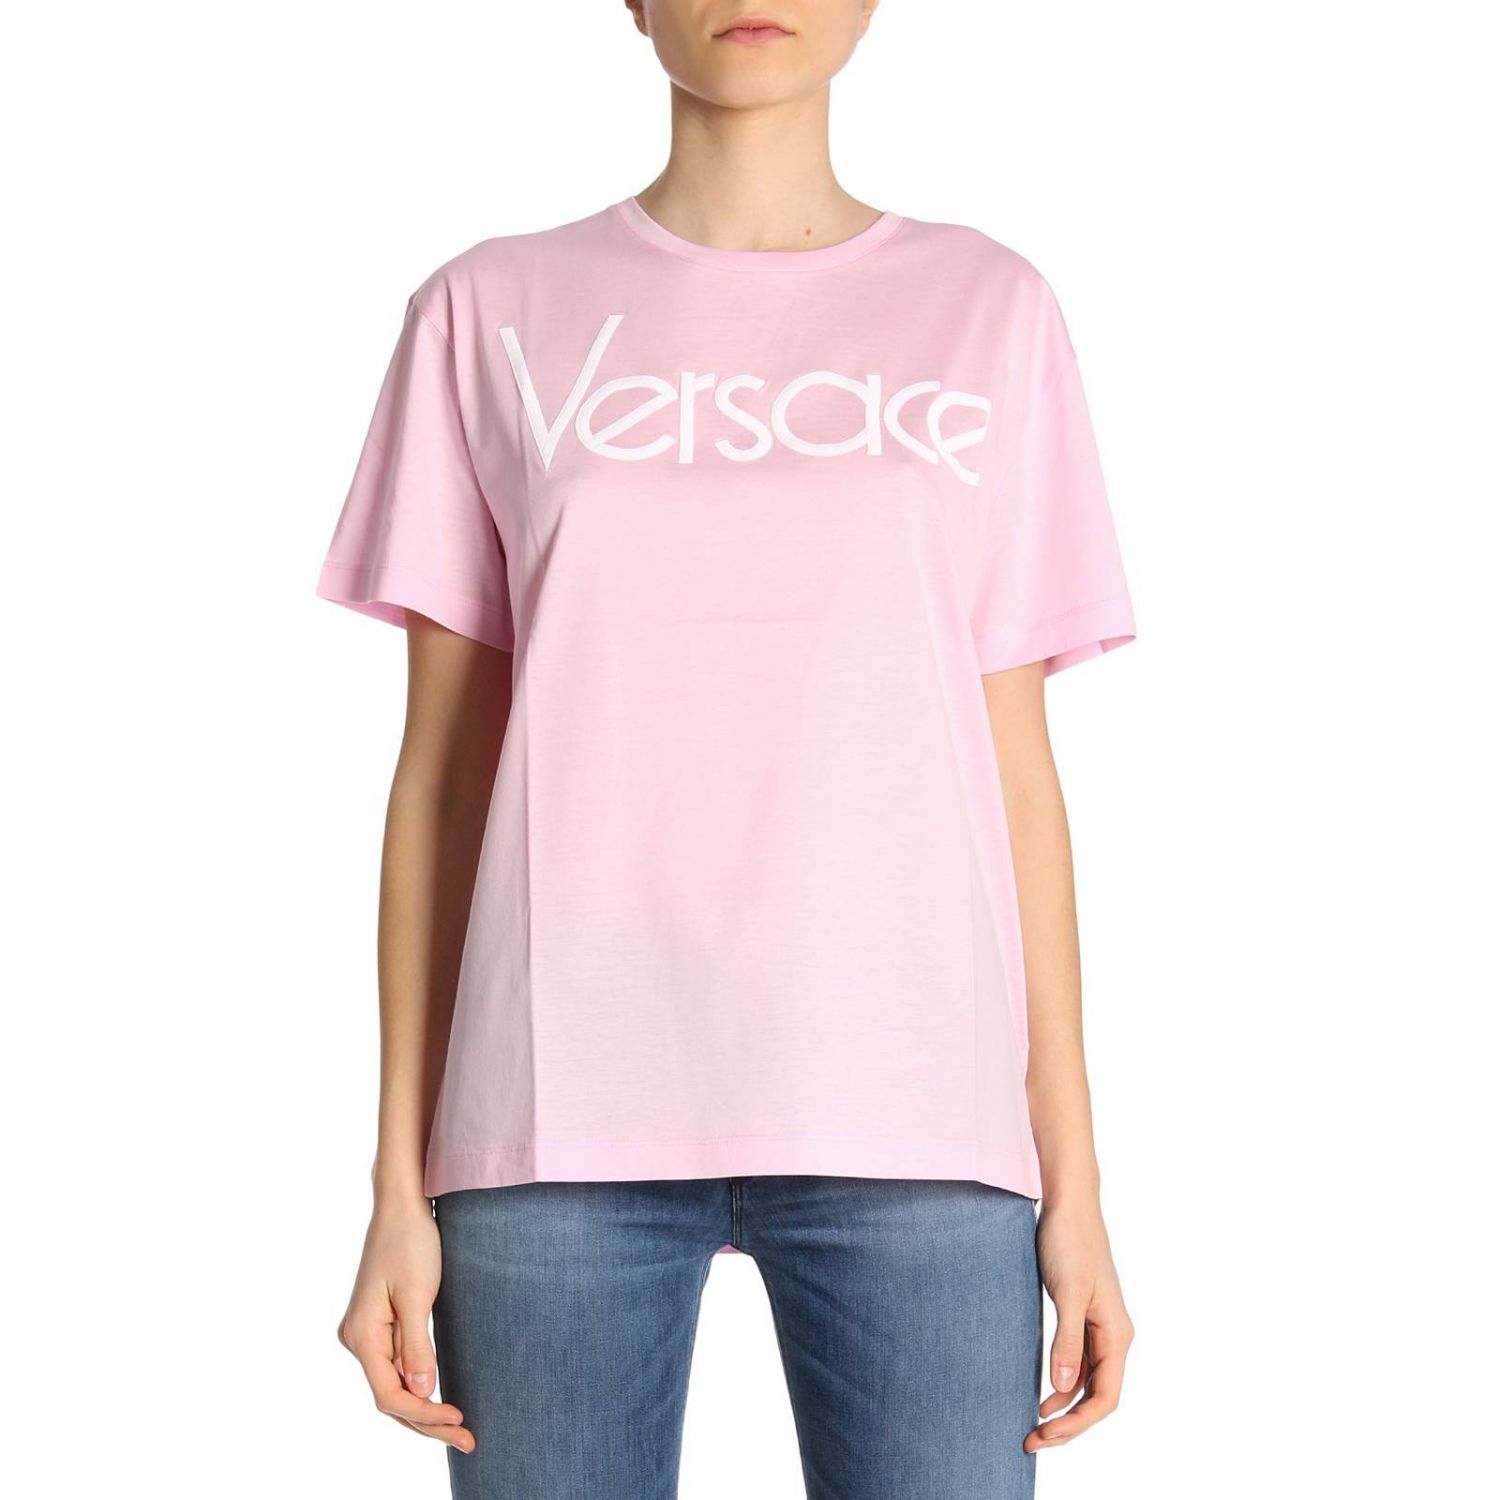 versace t shirt pink